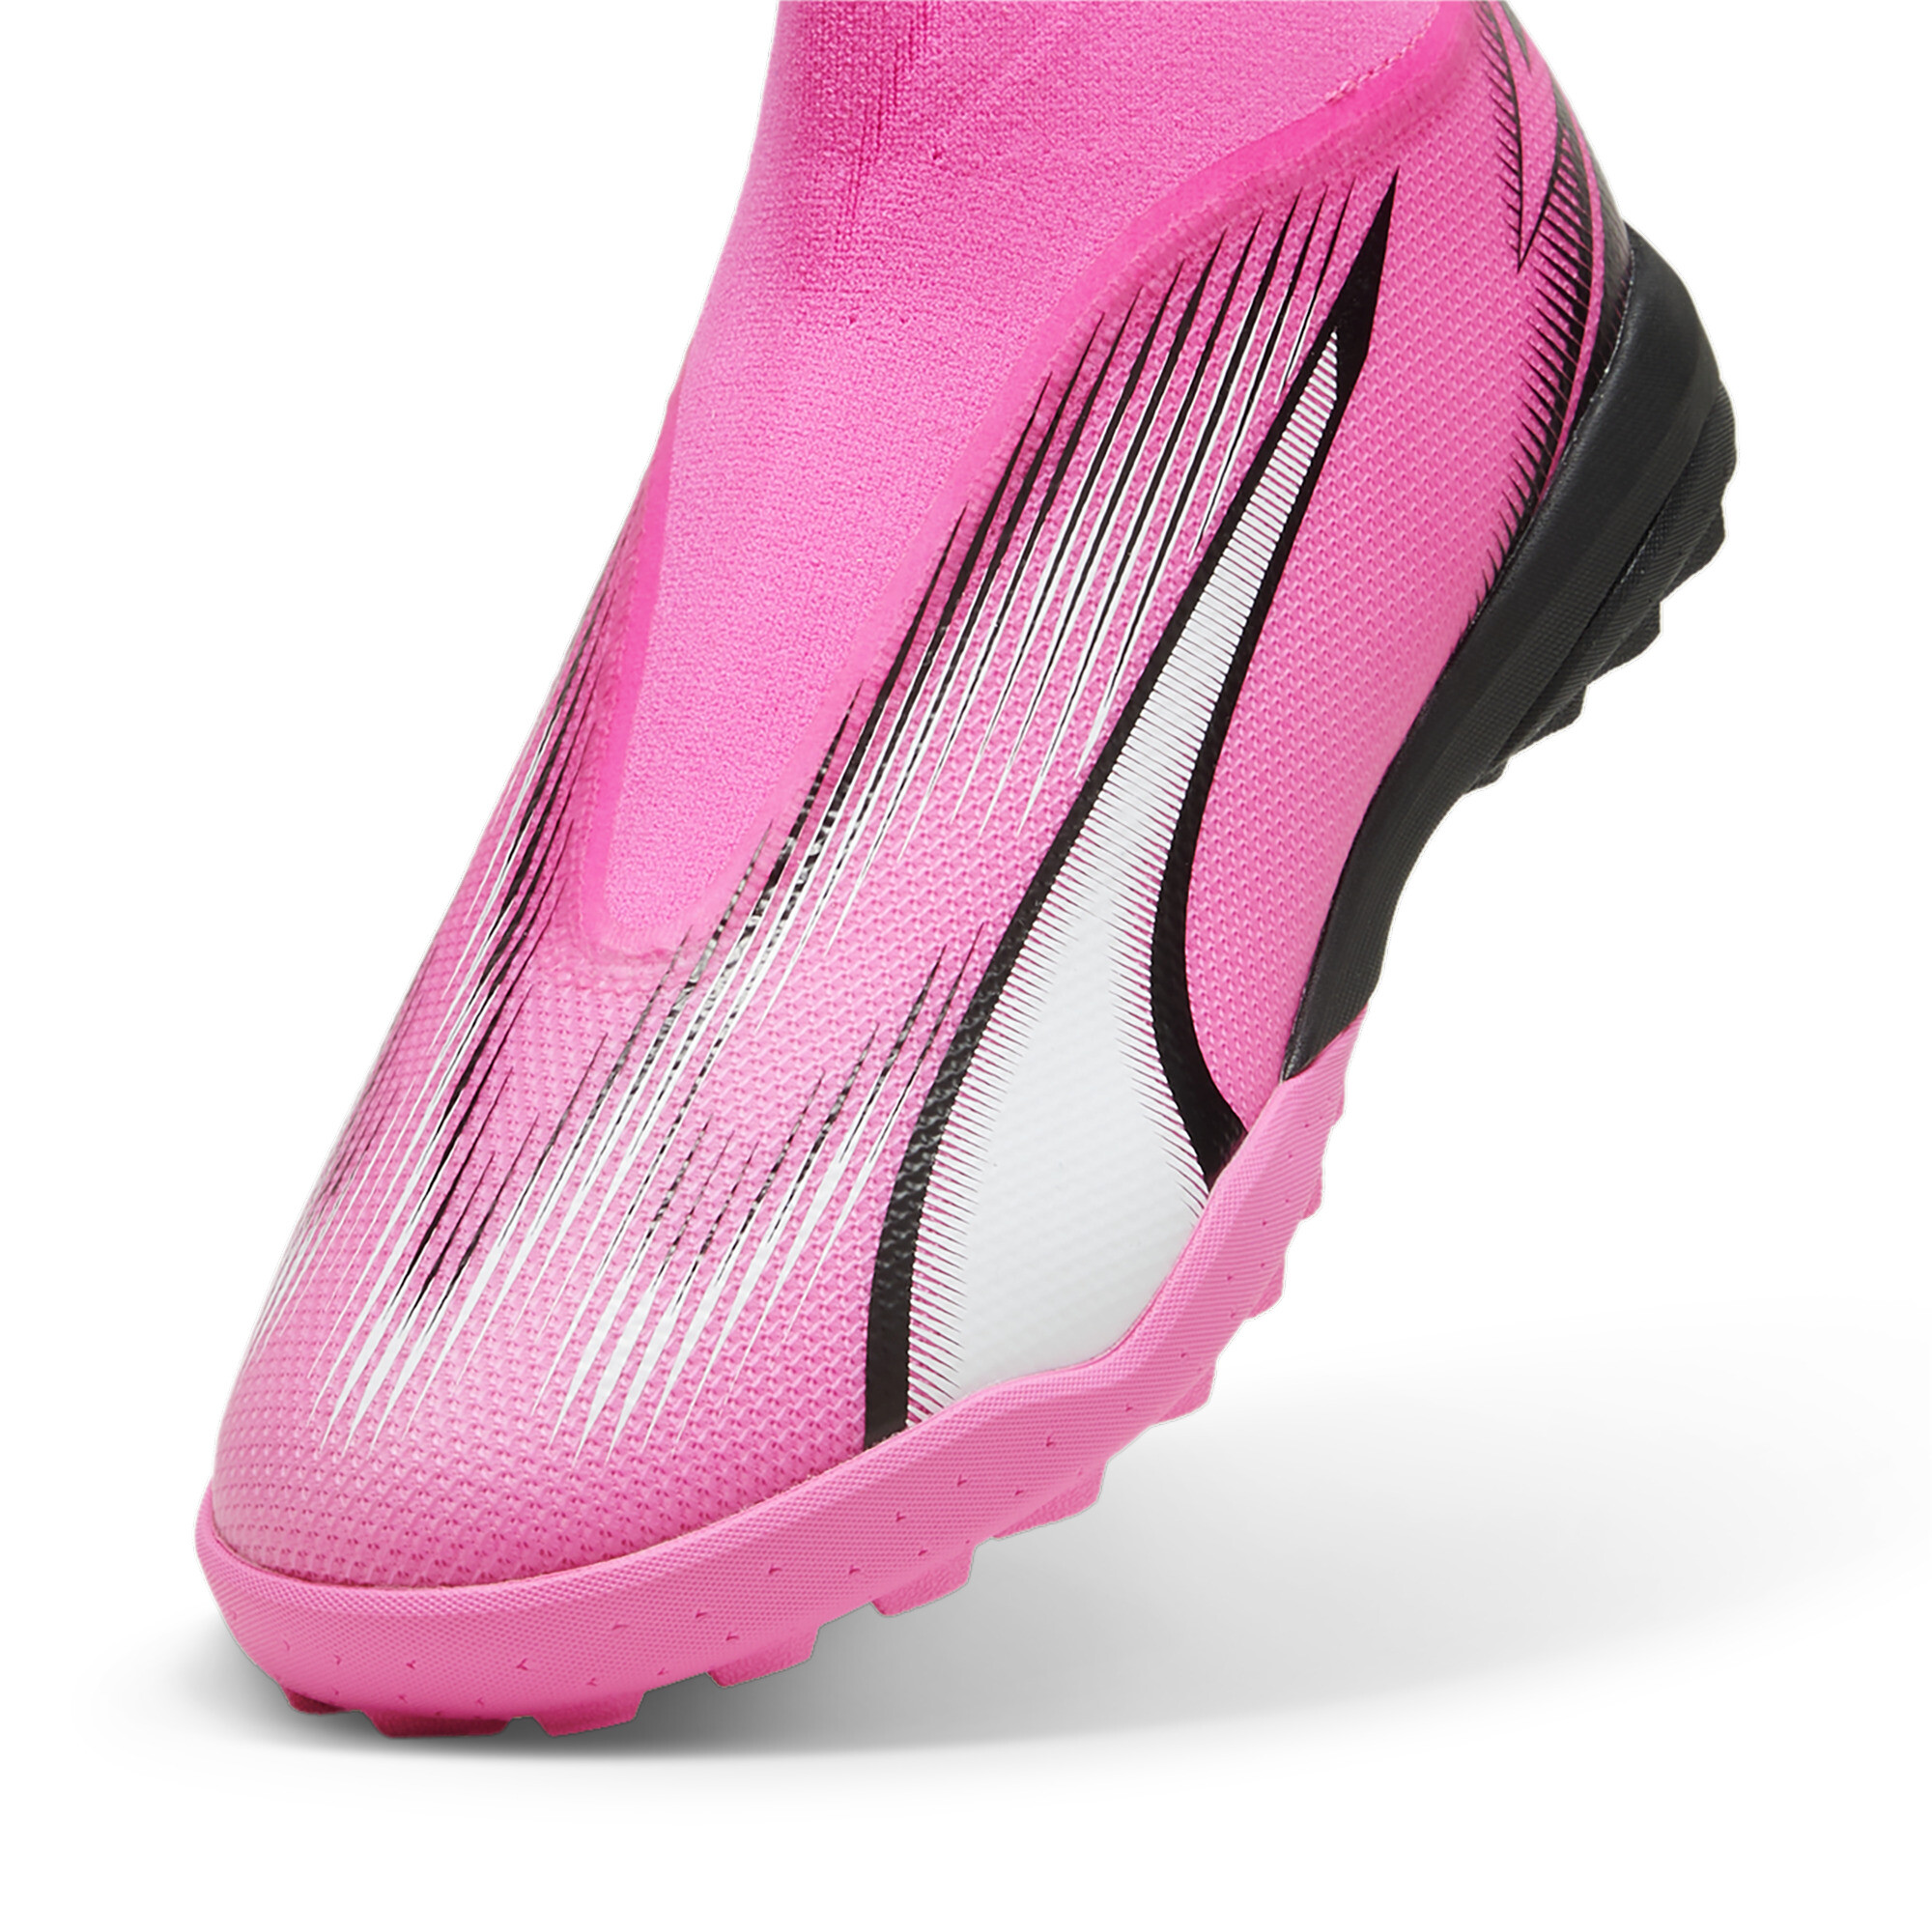 Men's PUMA ULTRA MATCH+ Laceless Football TT Boot In Pink, Size EU 47